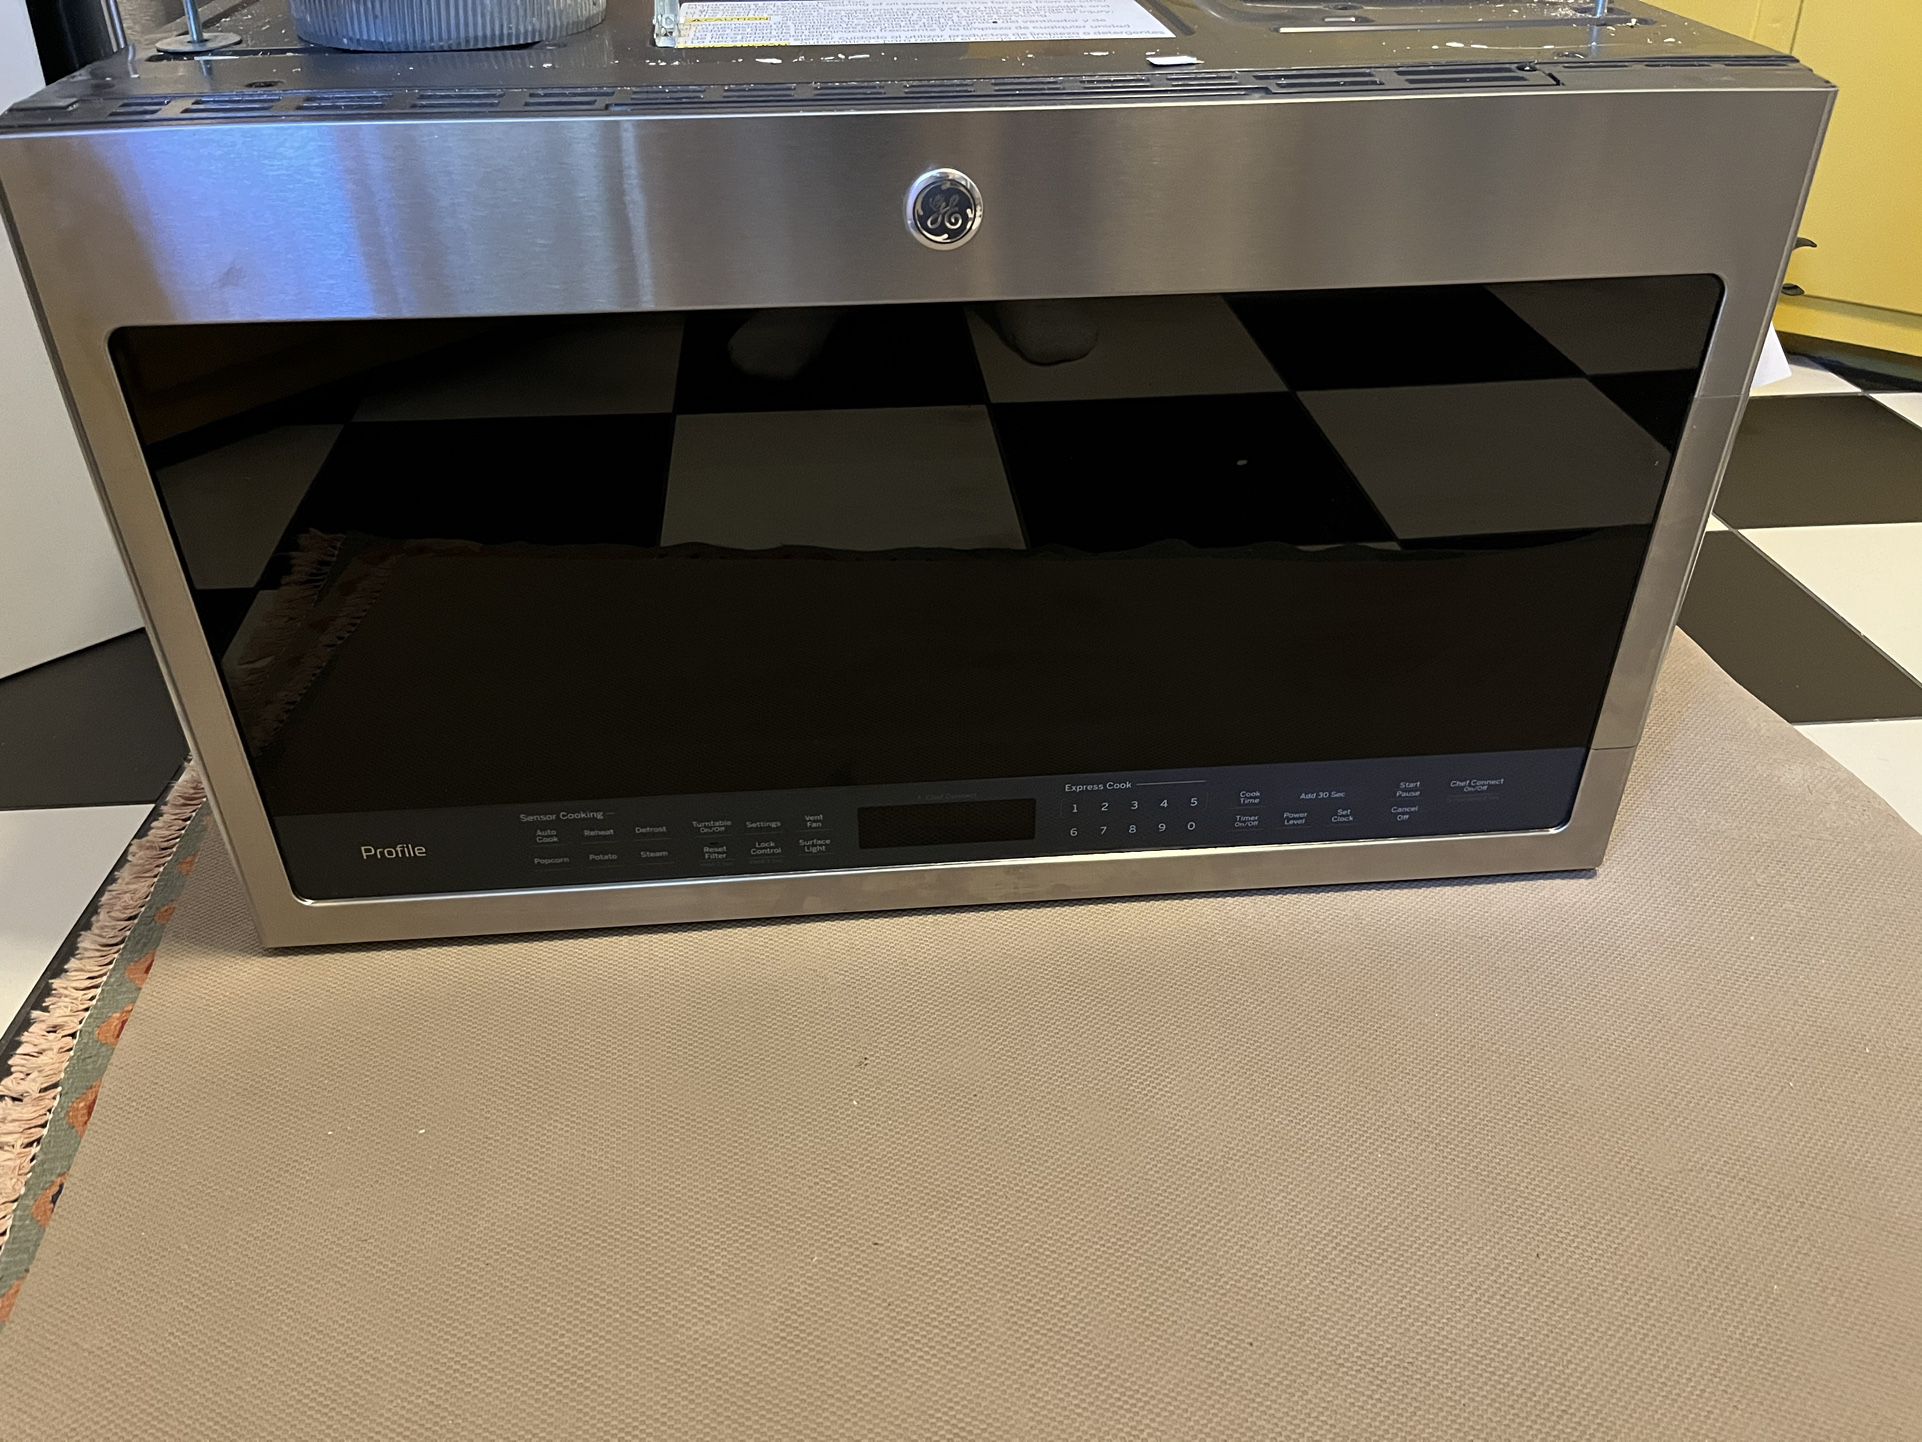 GE stainless steel microwave